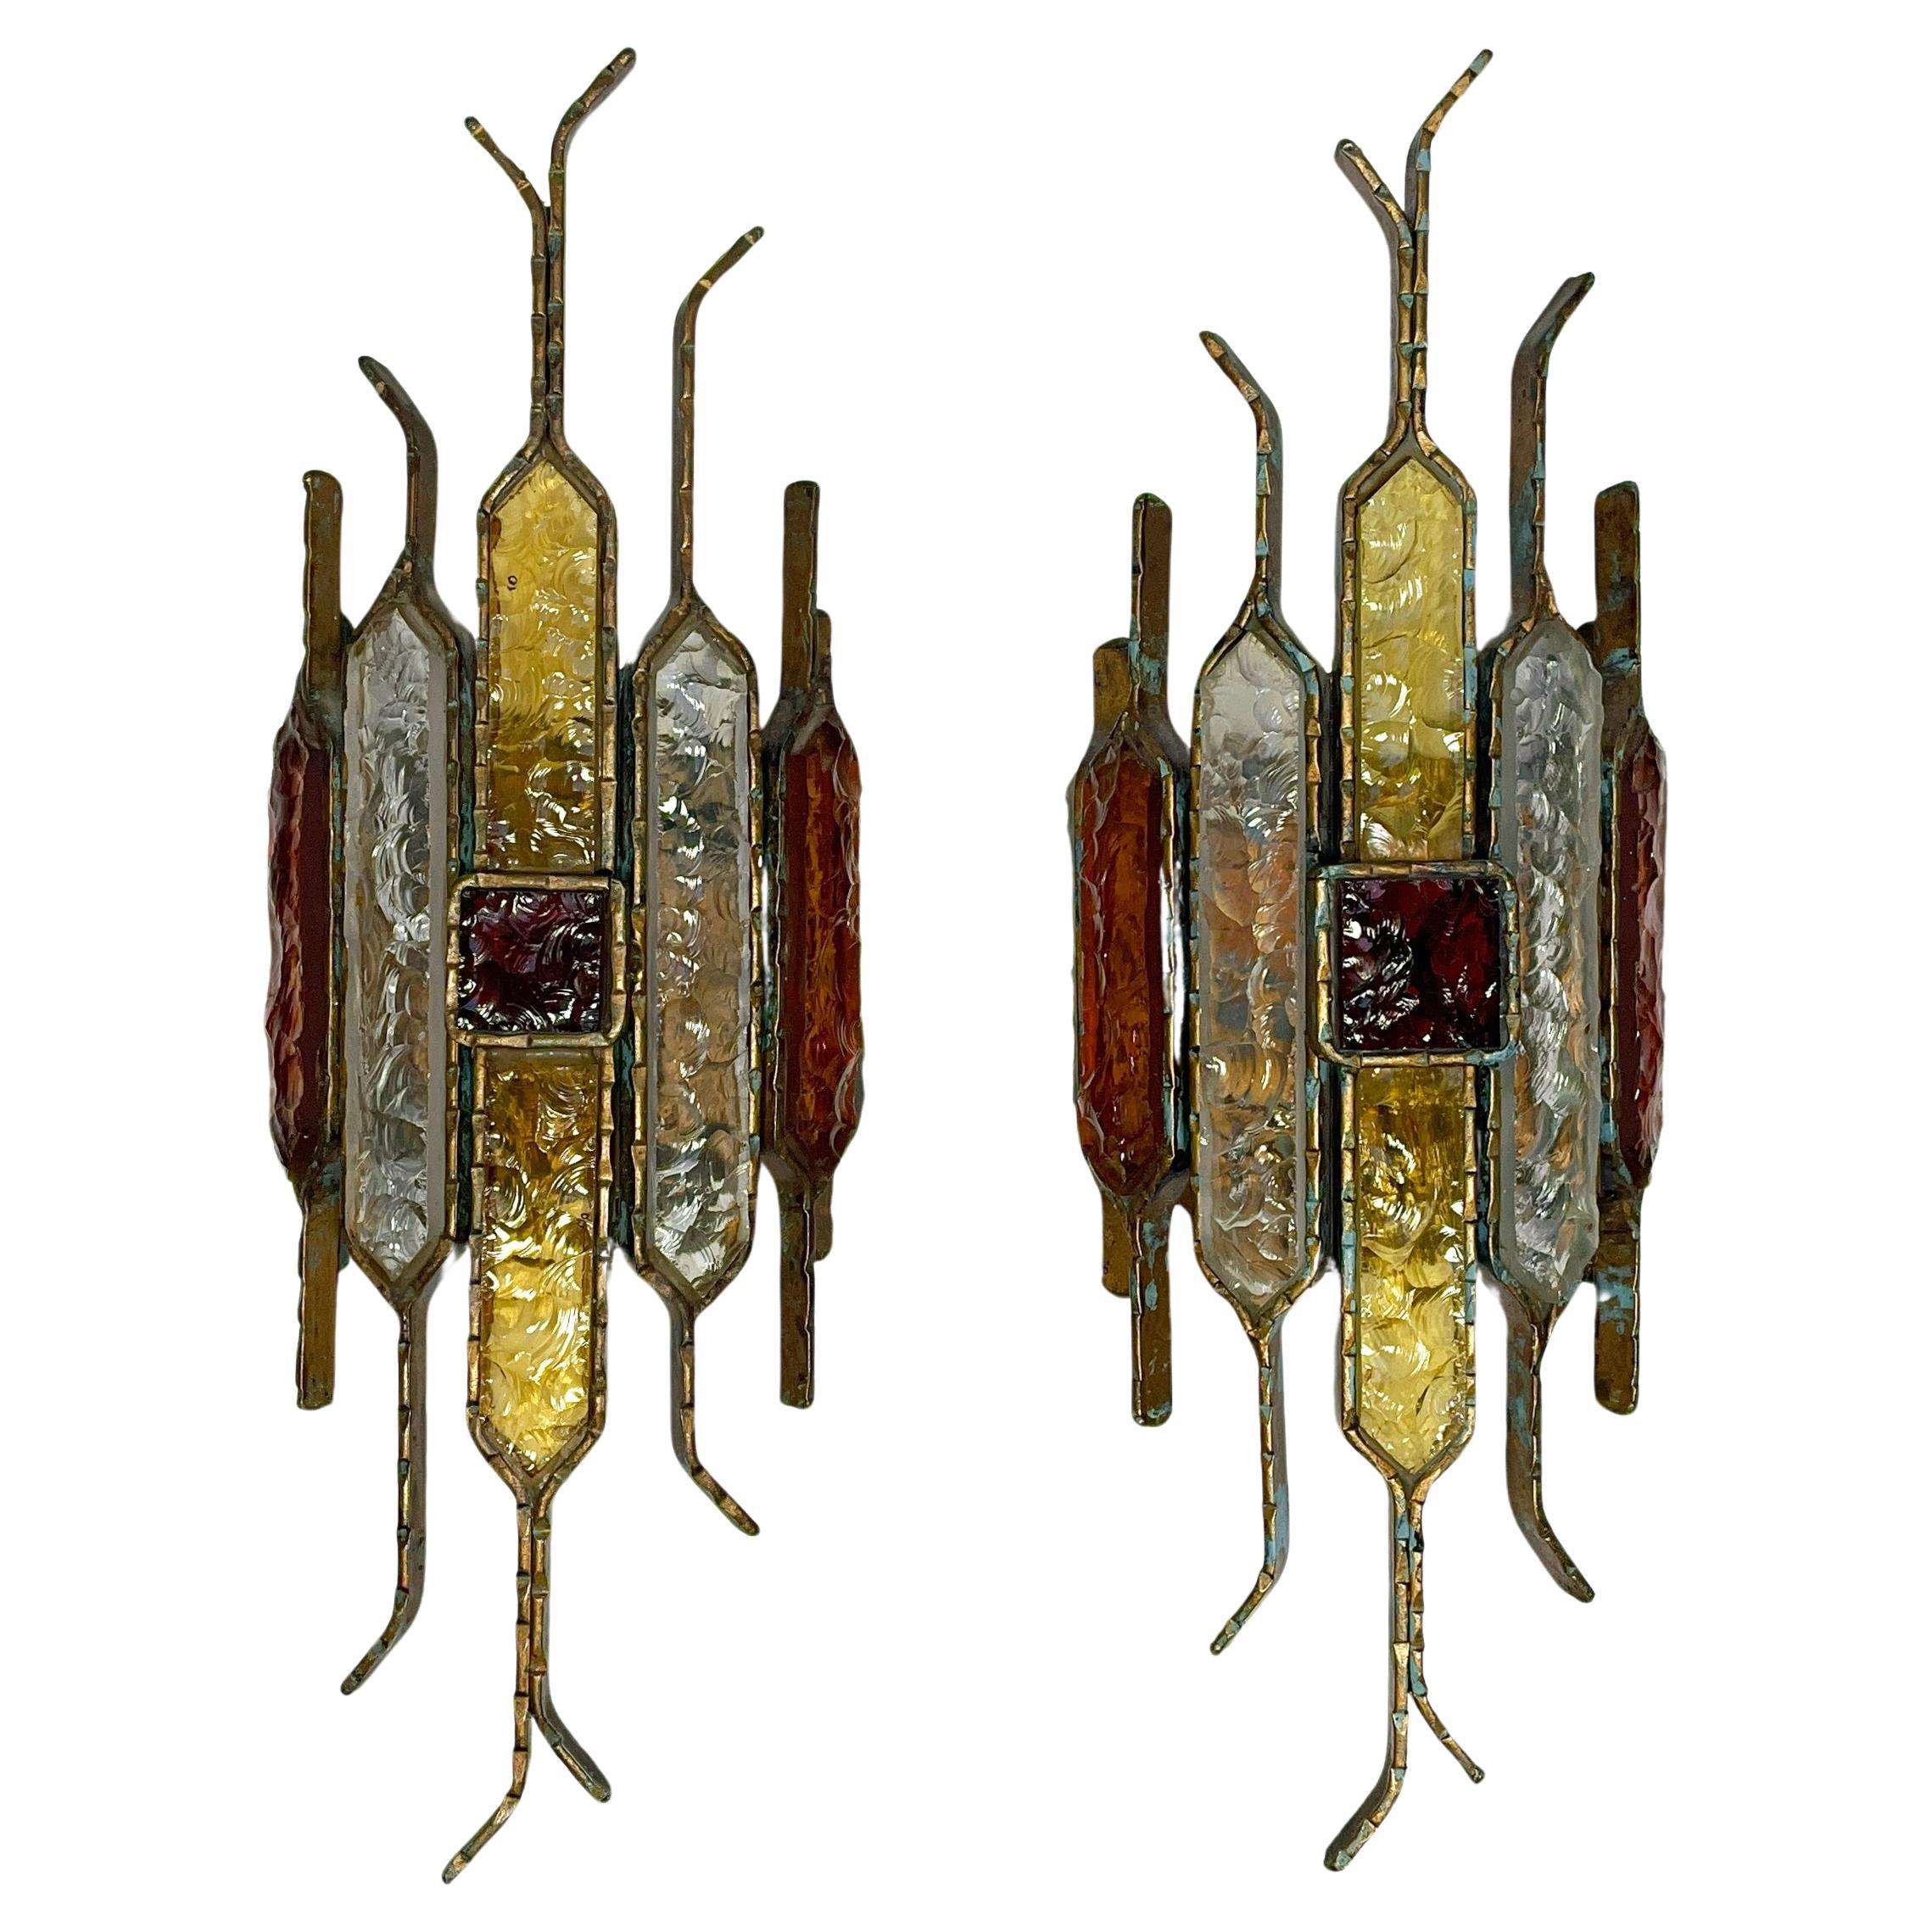 Sehr schönes, farbenfrohes & atemberaubendes Paar Wandlampen des italienischen Herstellers Longobard. 
Die Leuchter bestehen aus verschiedenfarbigen, gehämmerten Murano-Glaselementen und Schmiedeeisen mit vergoldeter Kupferpatina.
Aufgrund der